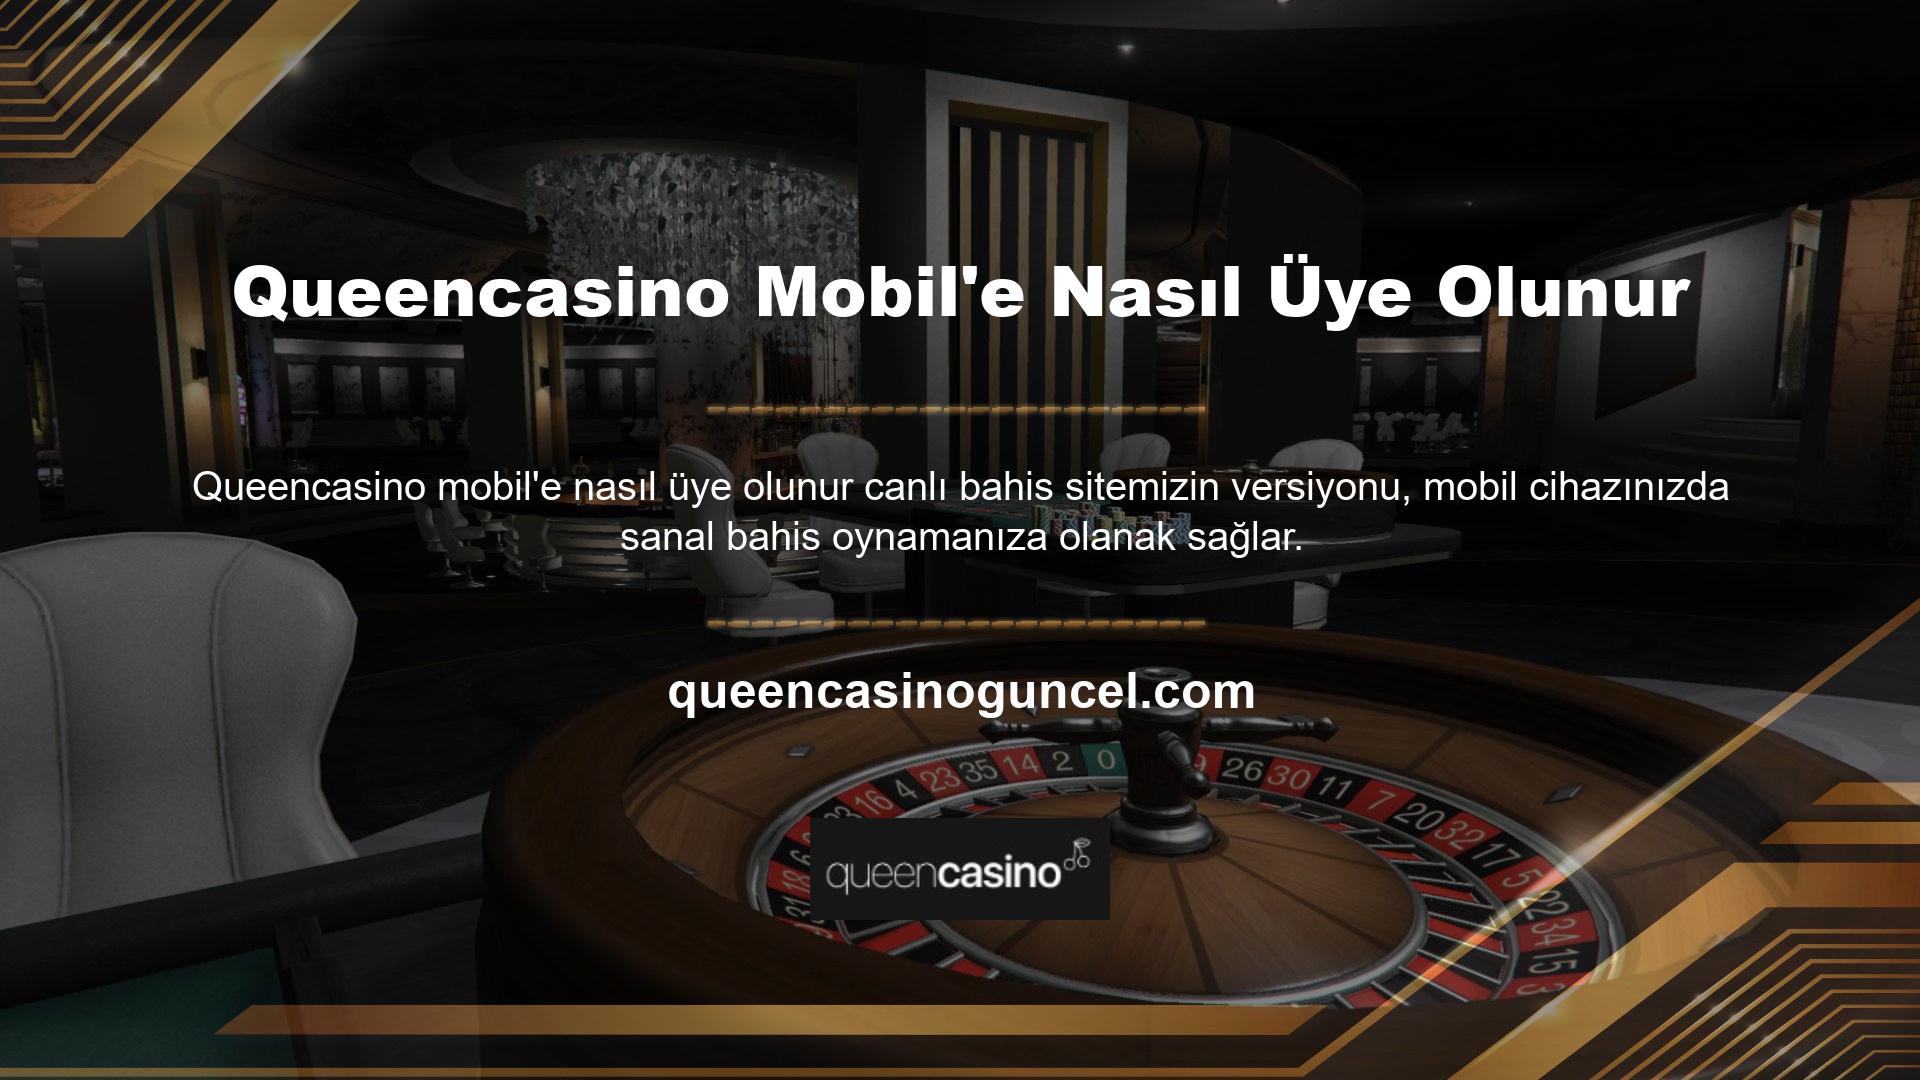 Queencasino Mobile giriş yapmak için tarayıcınıza mevcut web sitesi adresini girin